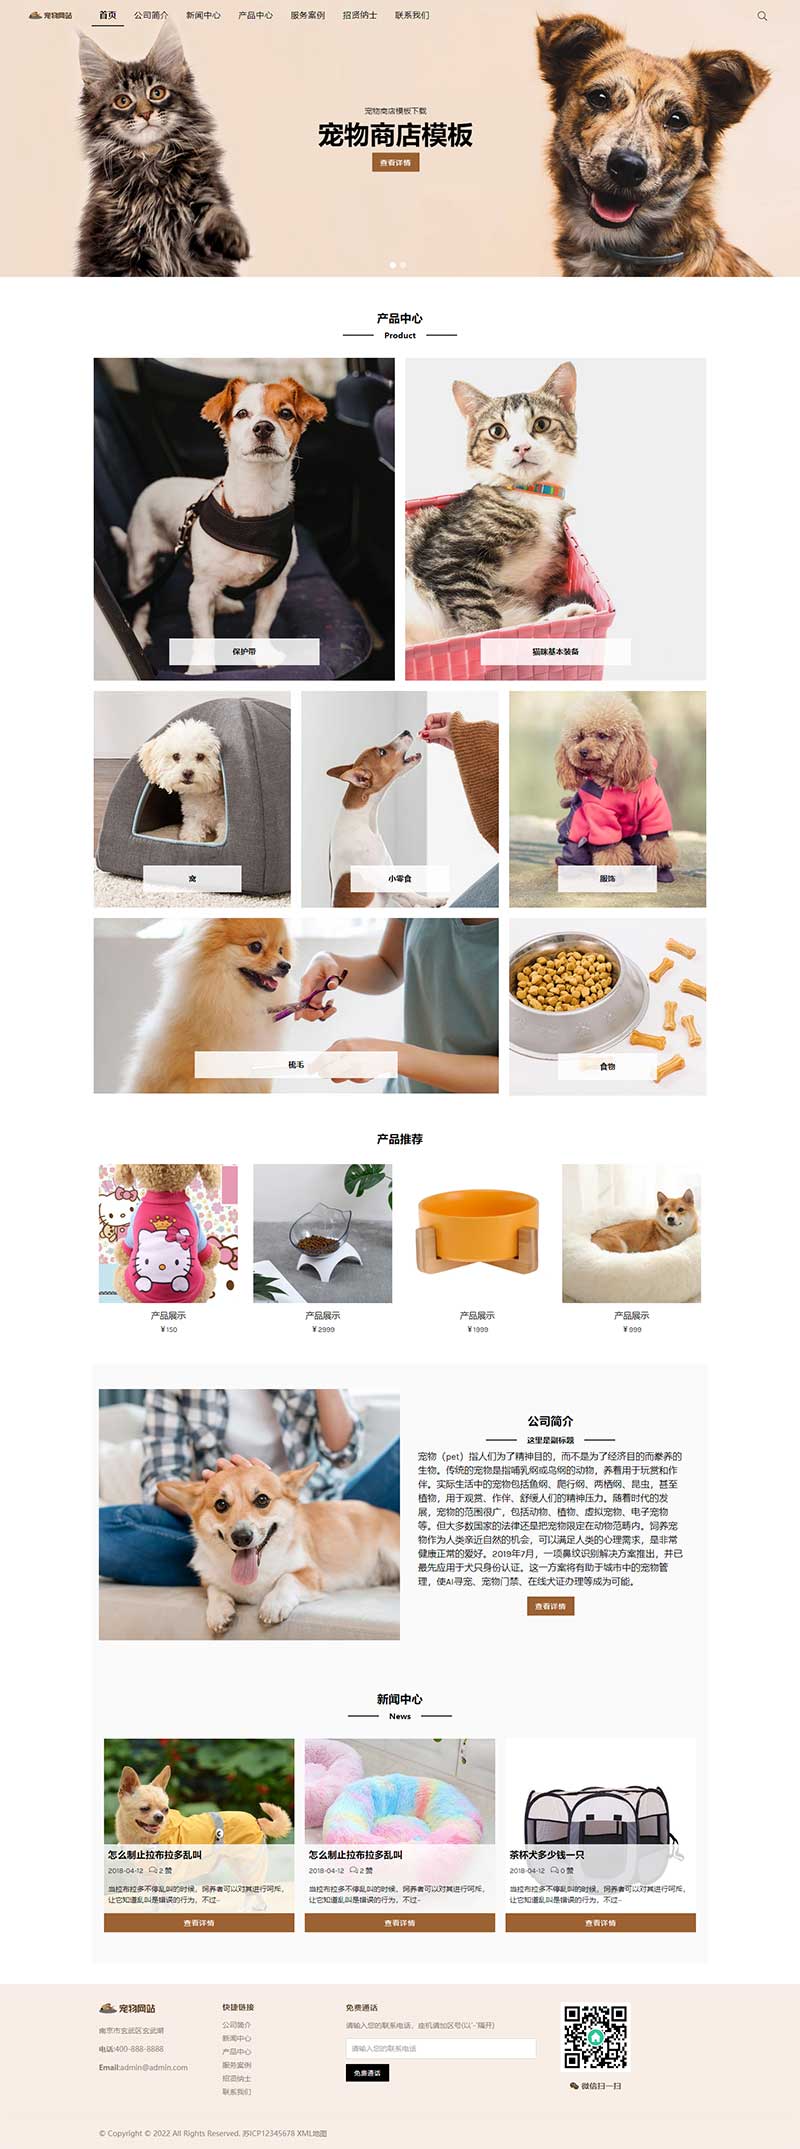 (自适应移动端)html5响应式宠物商店宠物行业类型网站电脑端模板展示图片